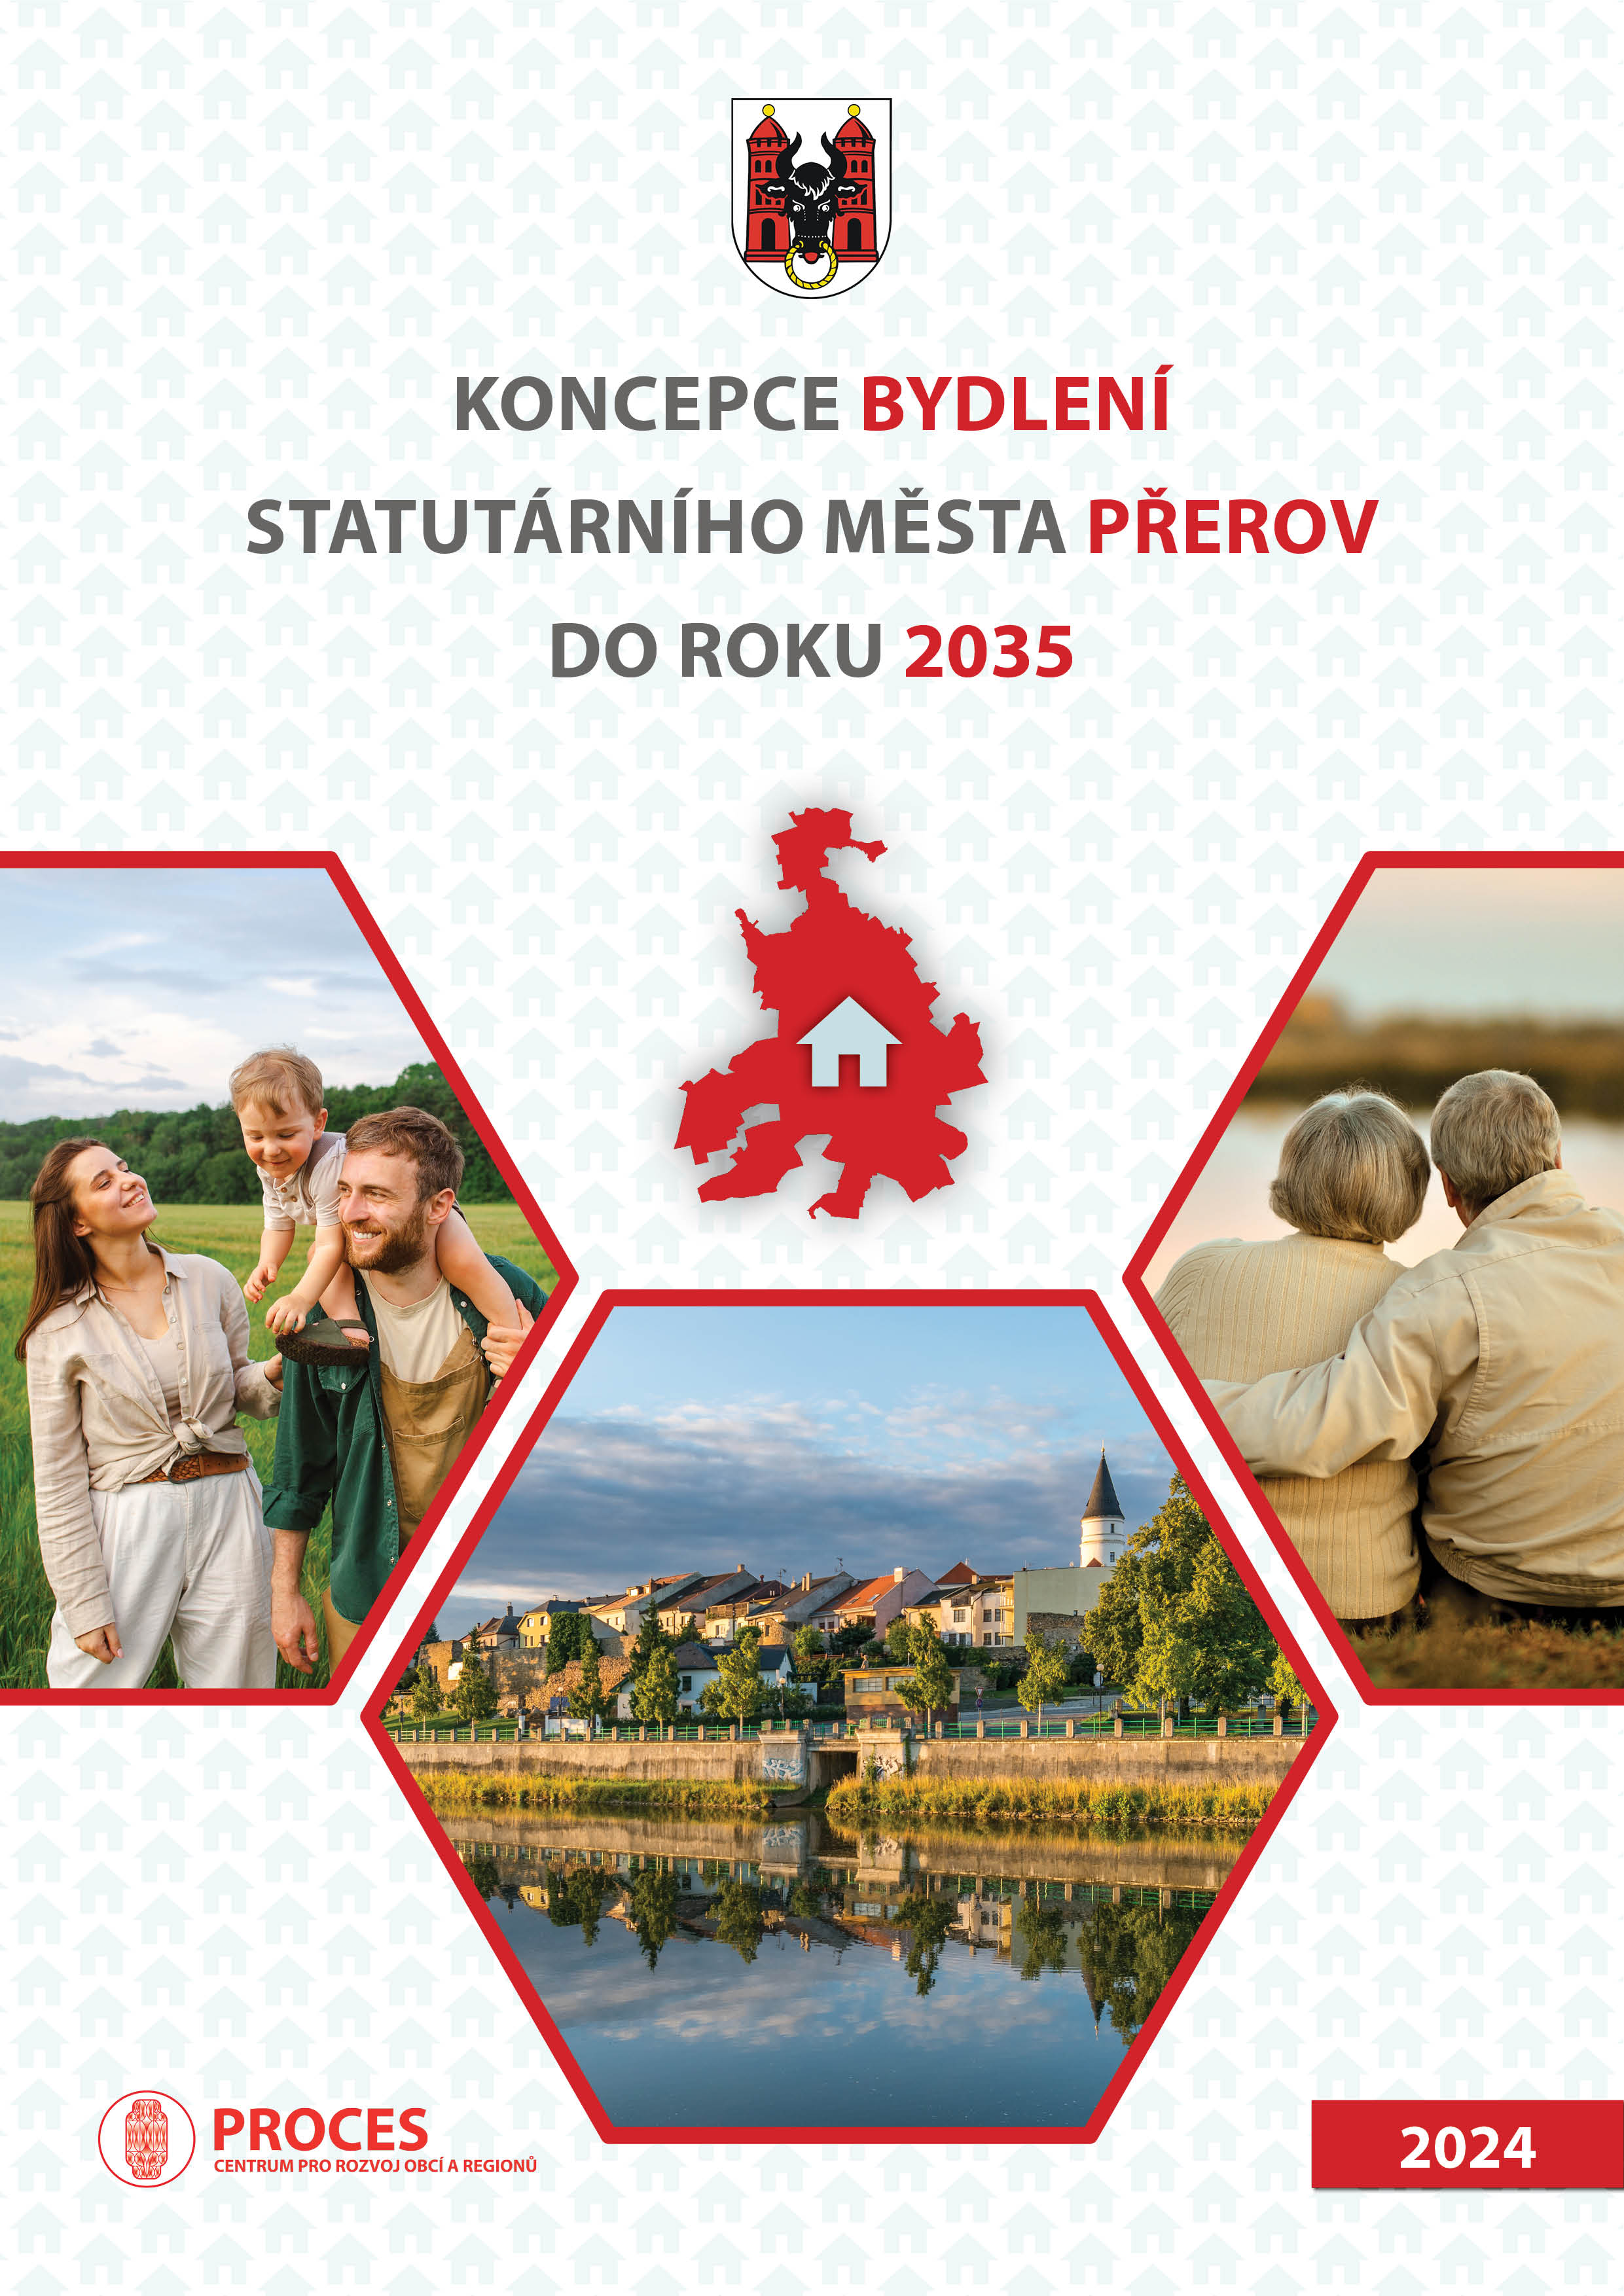 Koncepce bydlení statutárního města Přerov do roku 2035